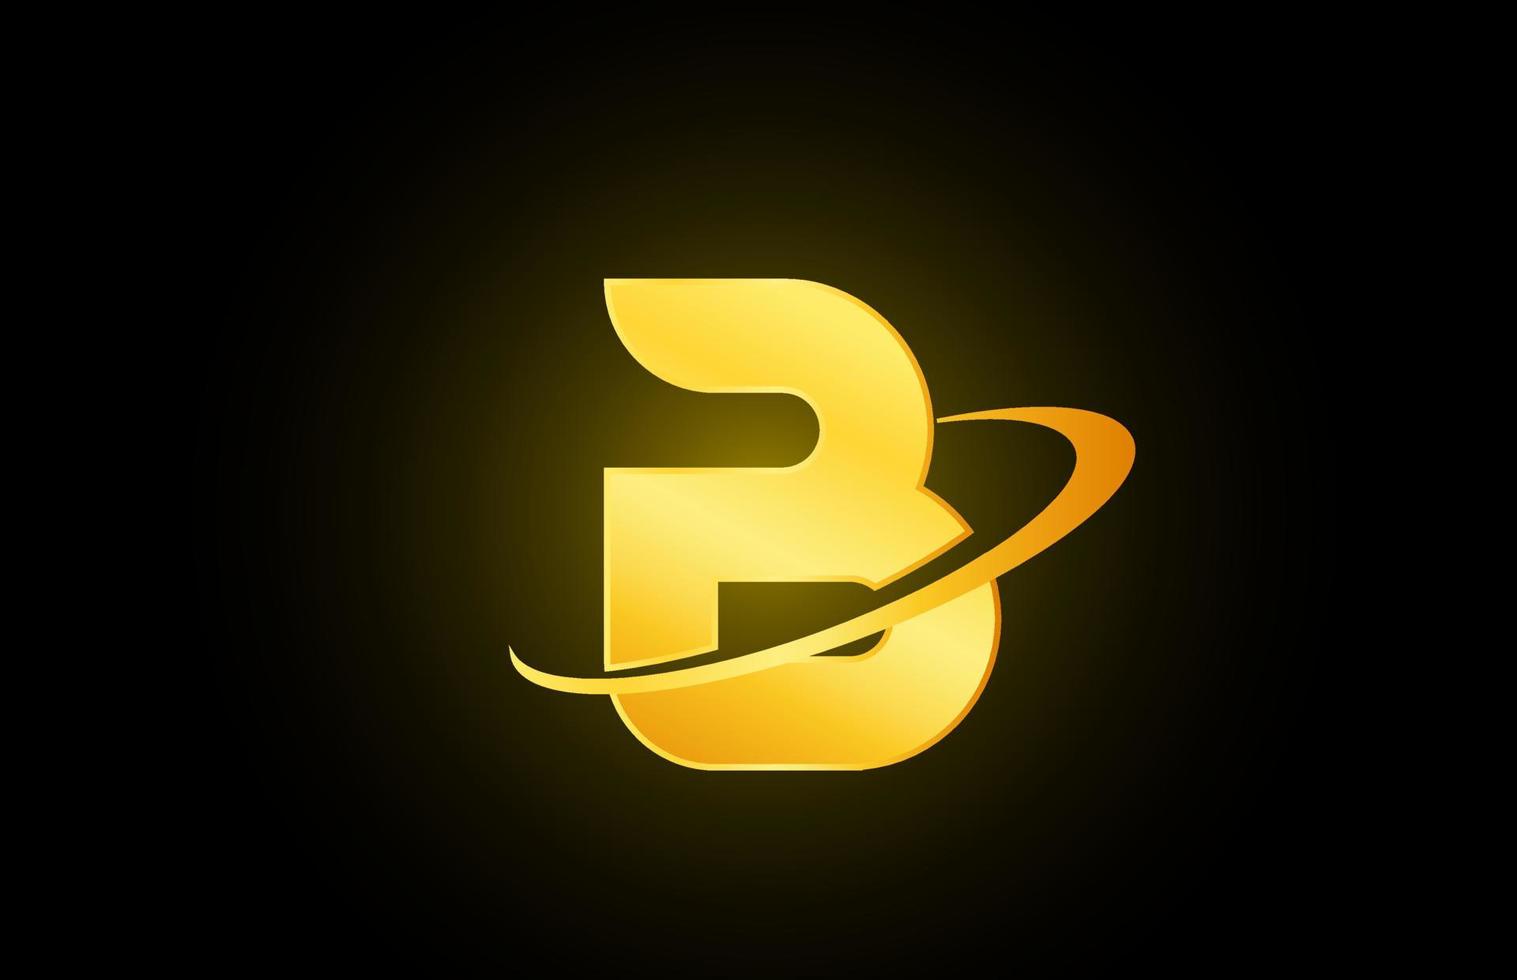 b ícone do logotipo da letra do alfabeto para negócios e empresa com design dourado vetor